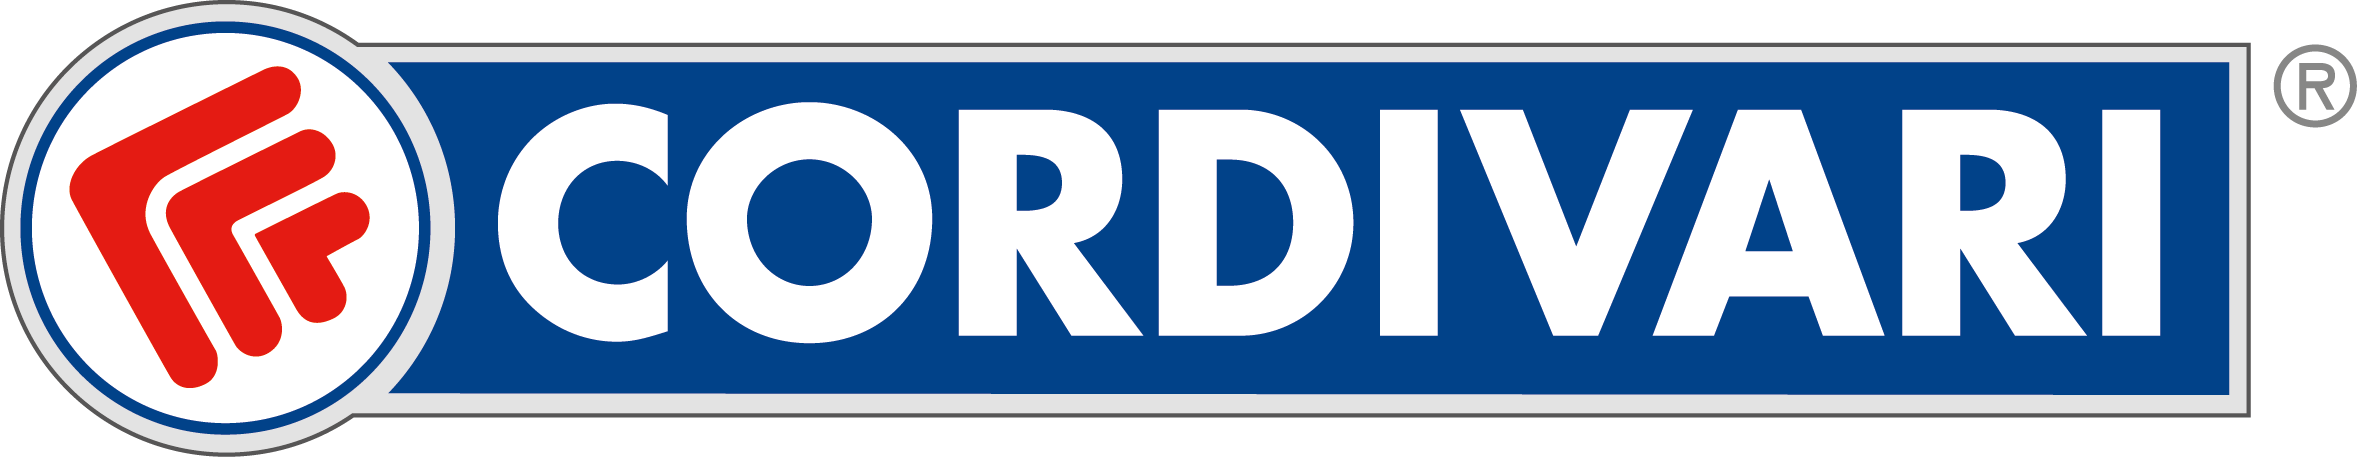 logo-CORDIVARI-2019